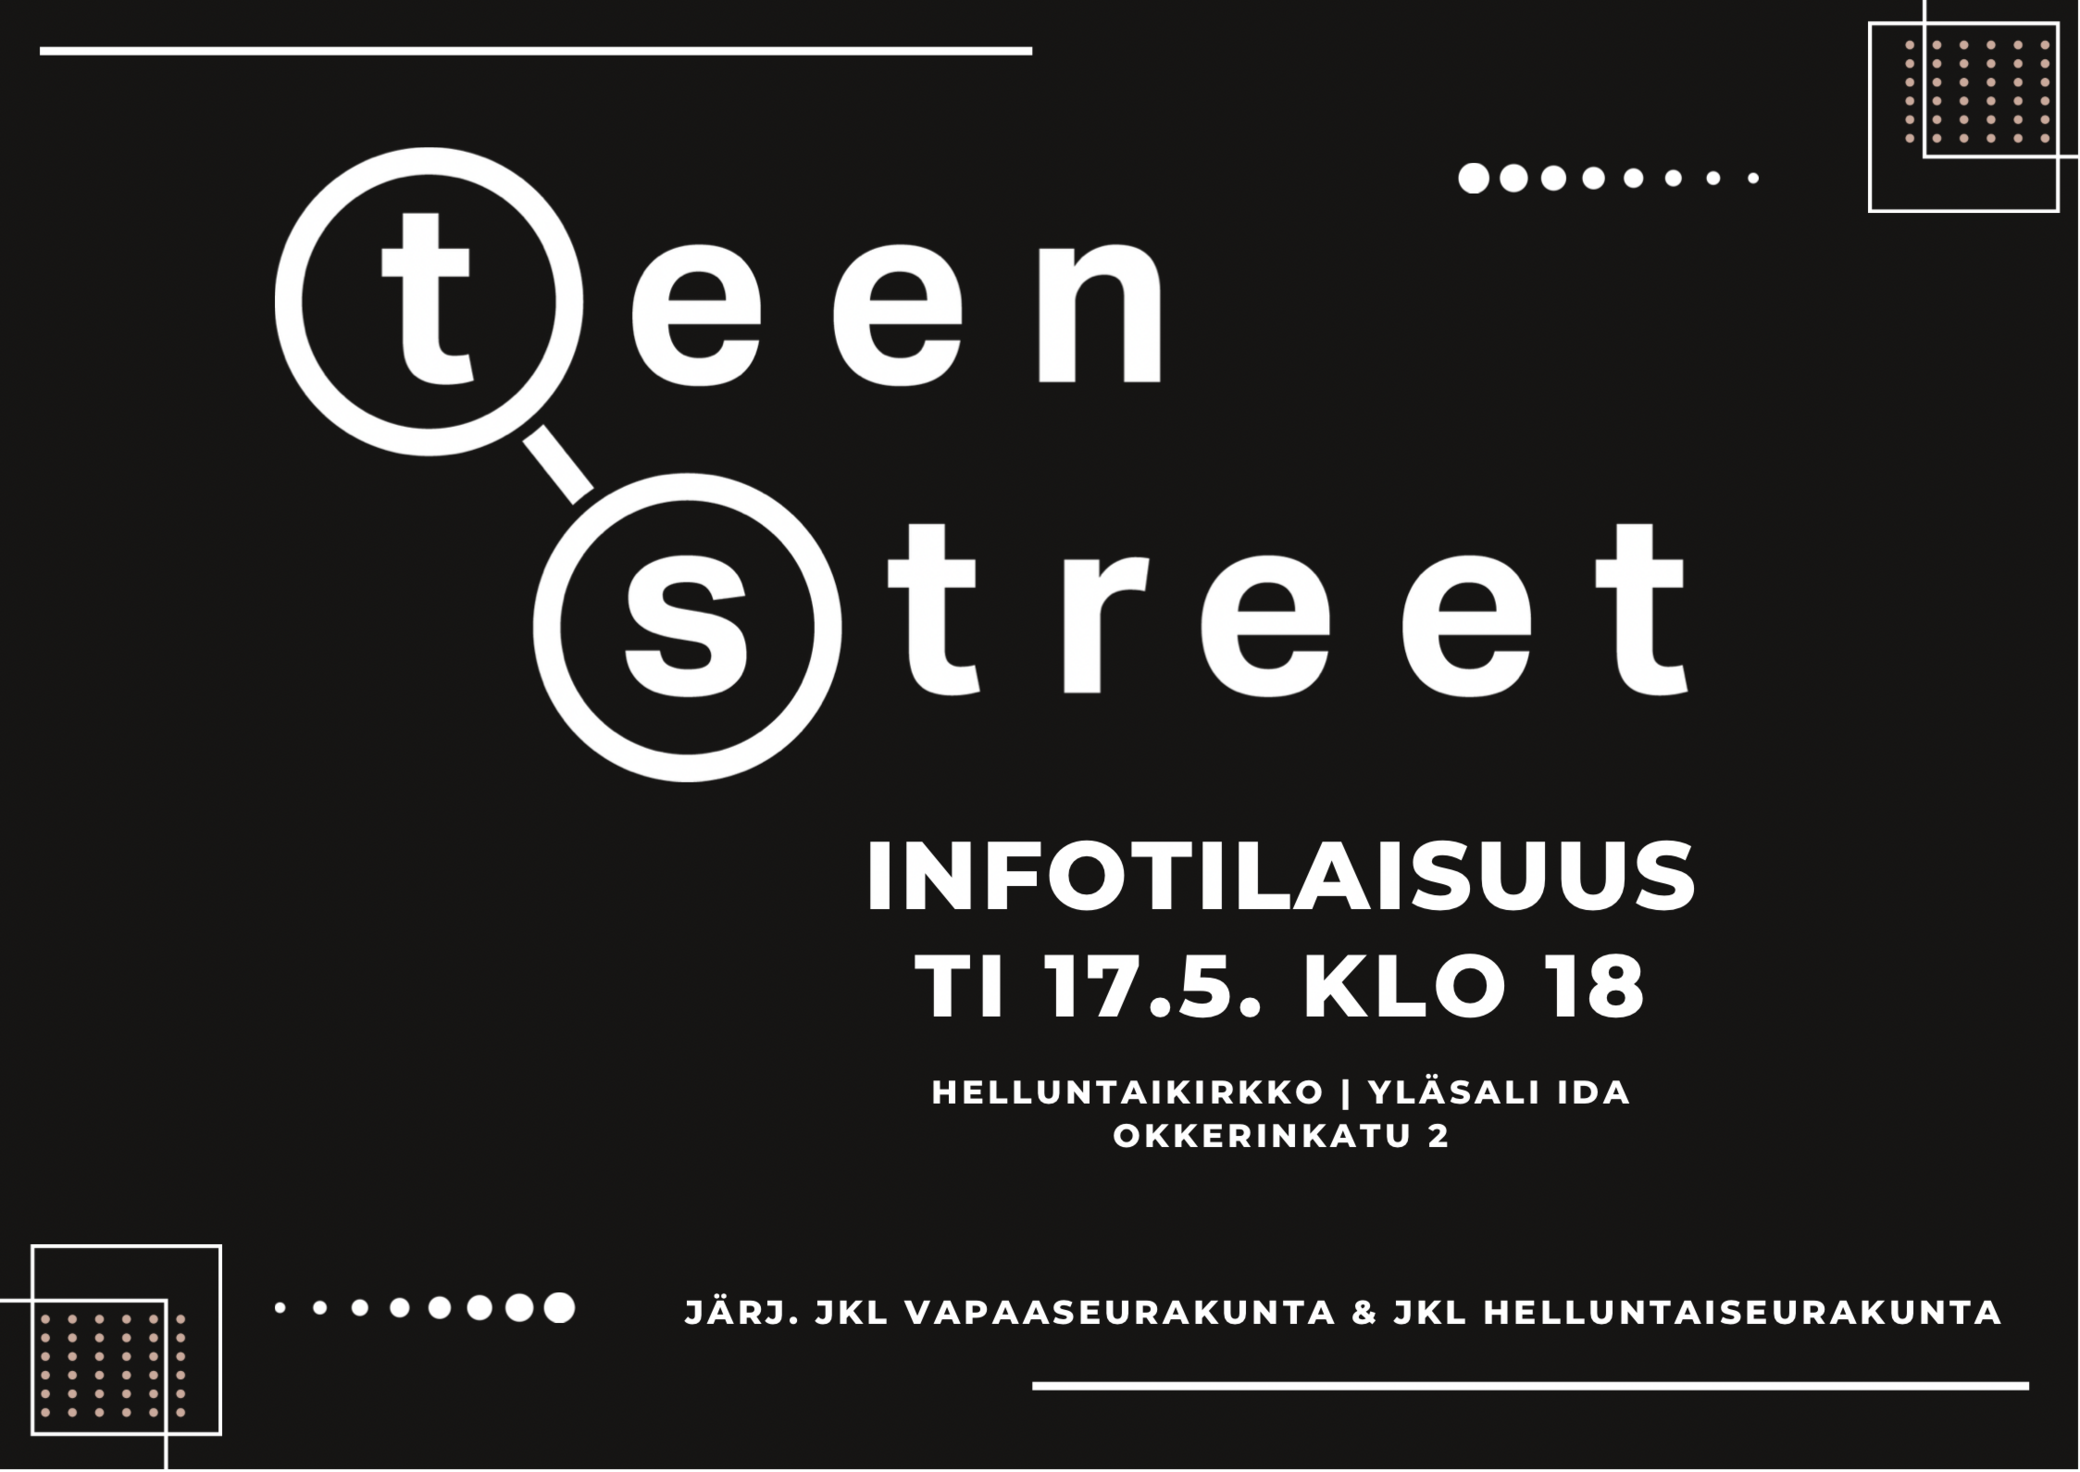 TeenStreet-infotilaisuus